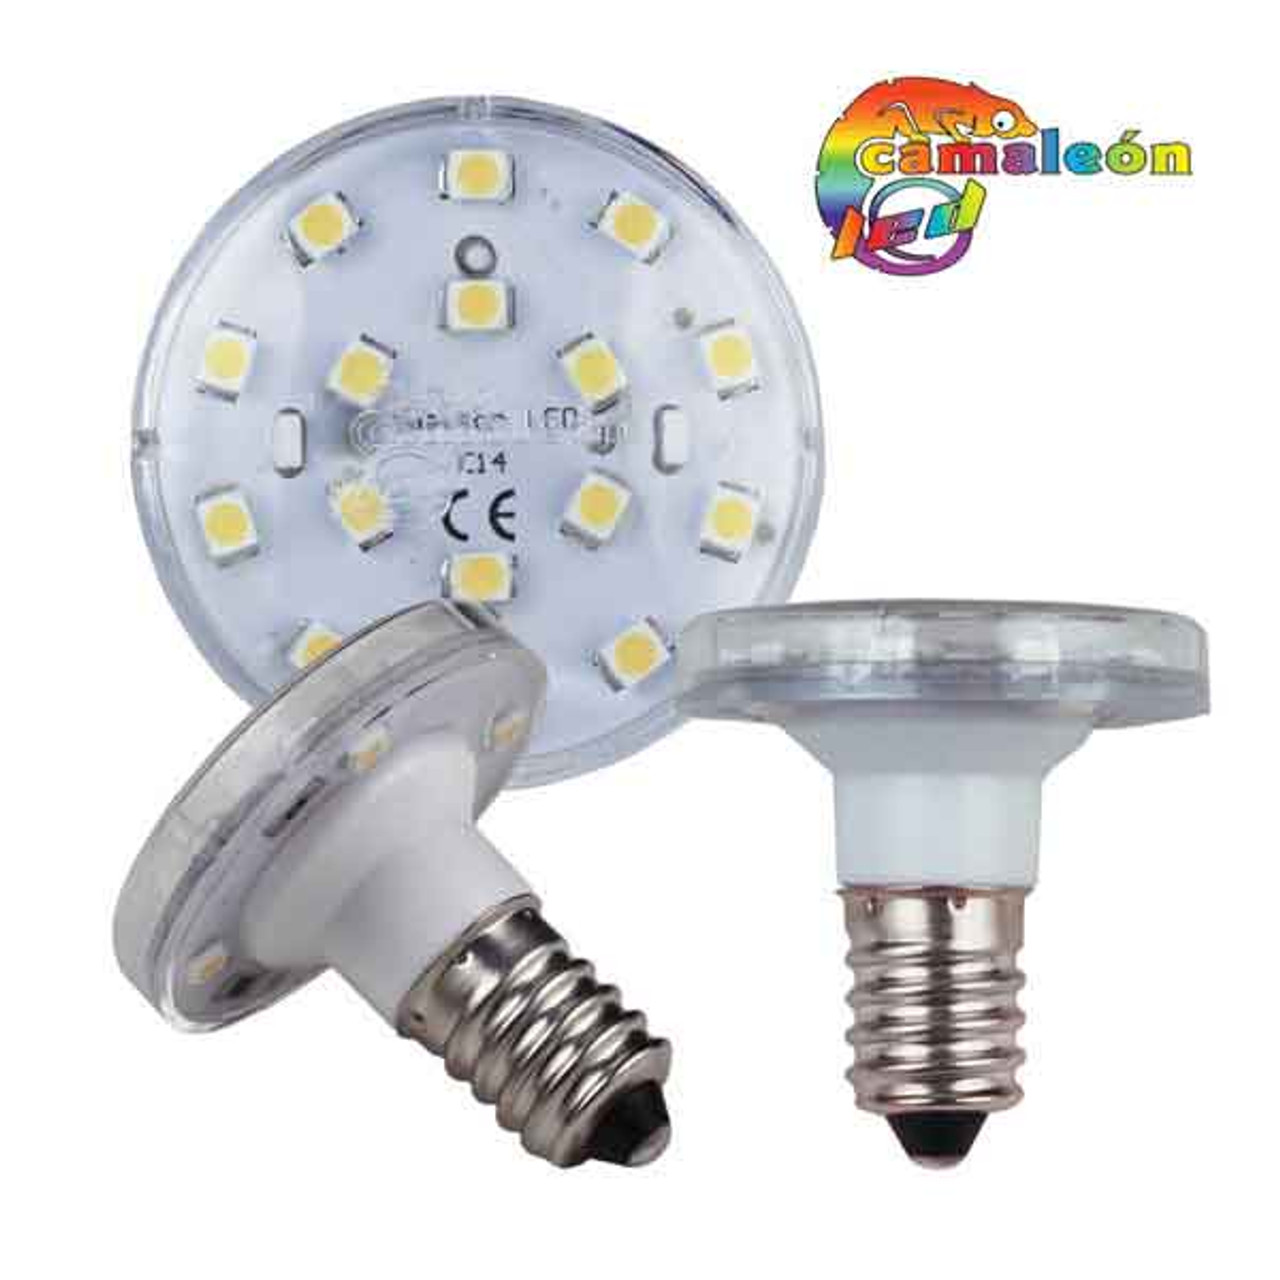 15T8-24V-E14 - European Light Bulbs